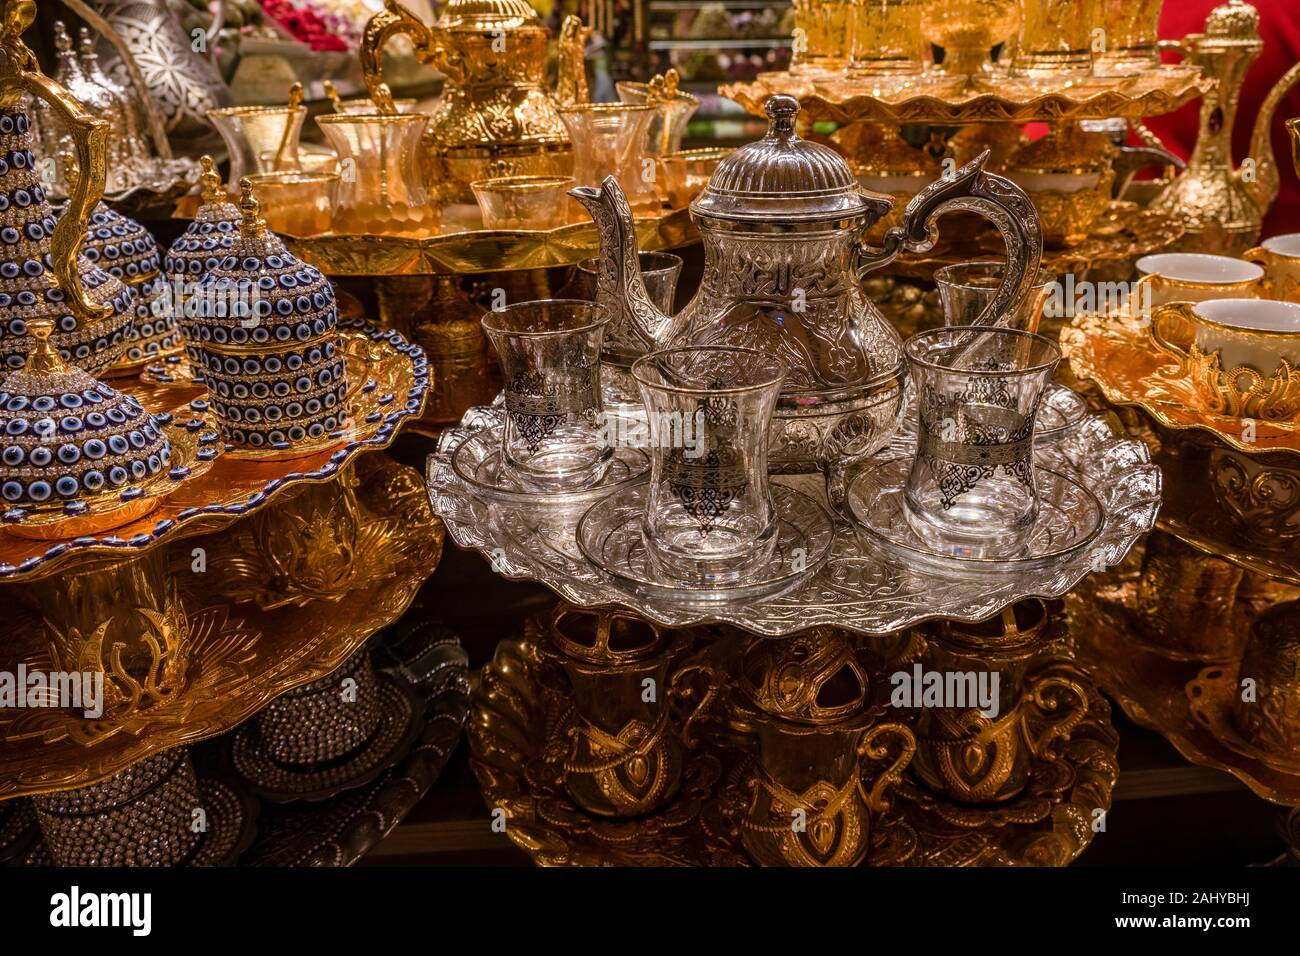 Gran variedad de platos de té son ofrecidos para la venta en el Bazar de las especias, Mısır Çarşısı, también conocido como el Bazar Egipcio Foto de stock